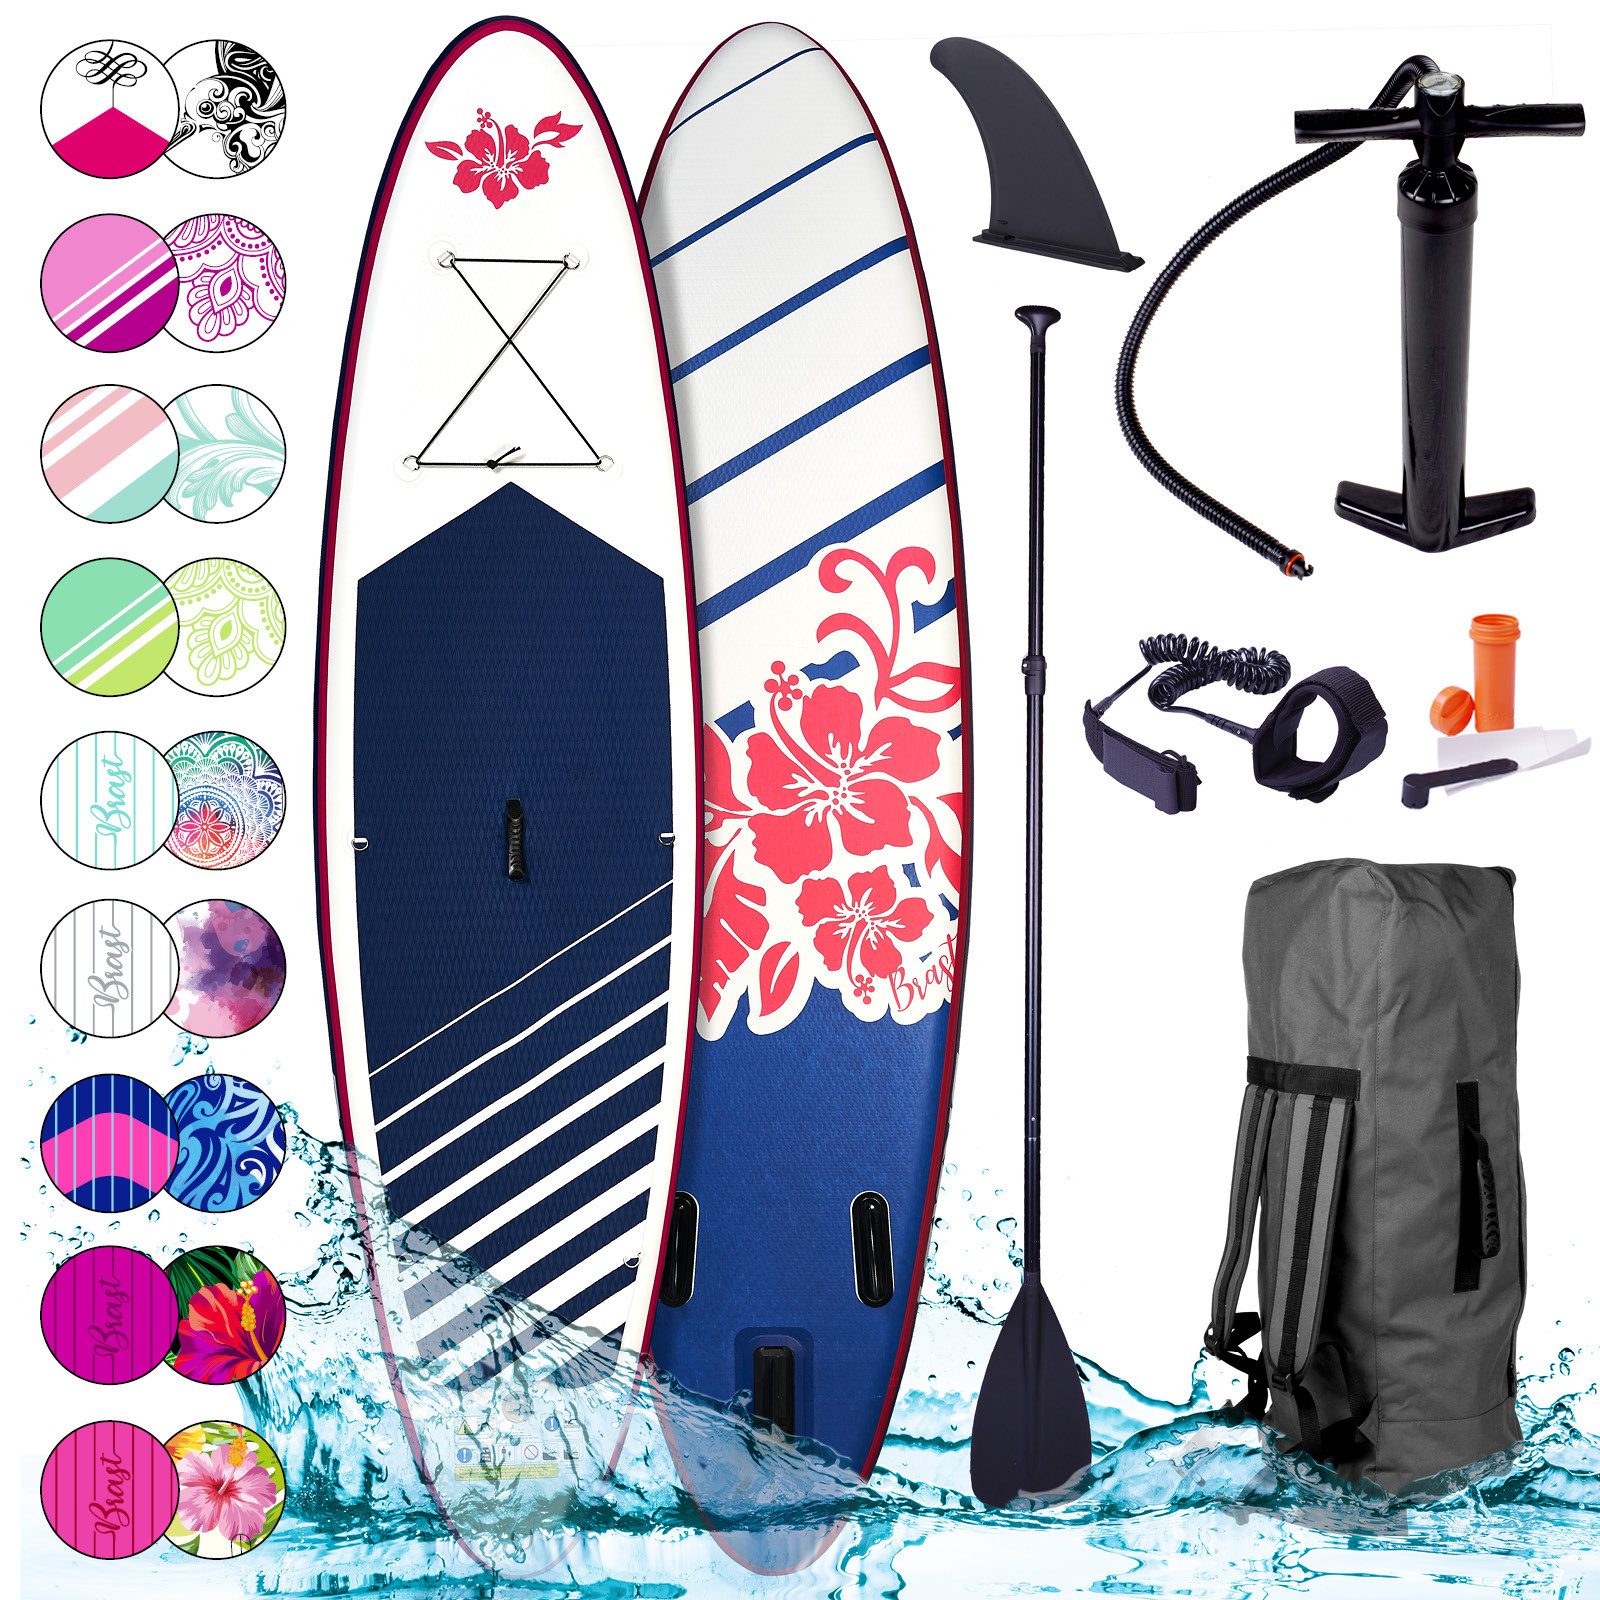 BRAST SUP-Board Aufblasbares Stand up Paddle Set für Frauen viele Modelle, (300x76x15cm), incl. Zubehör, 5 Jahre Garantie, Fußschlaufe Paddel Pumpe Rucksack